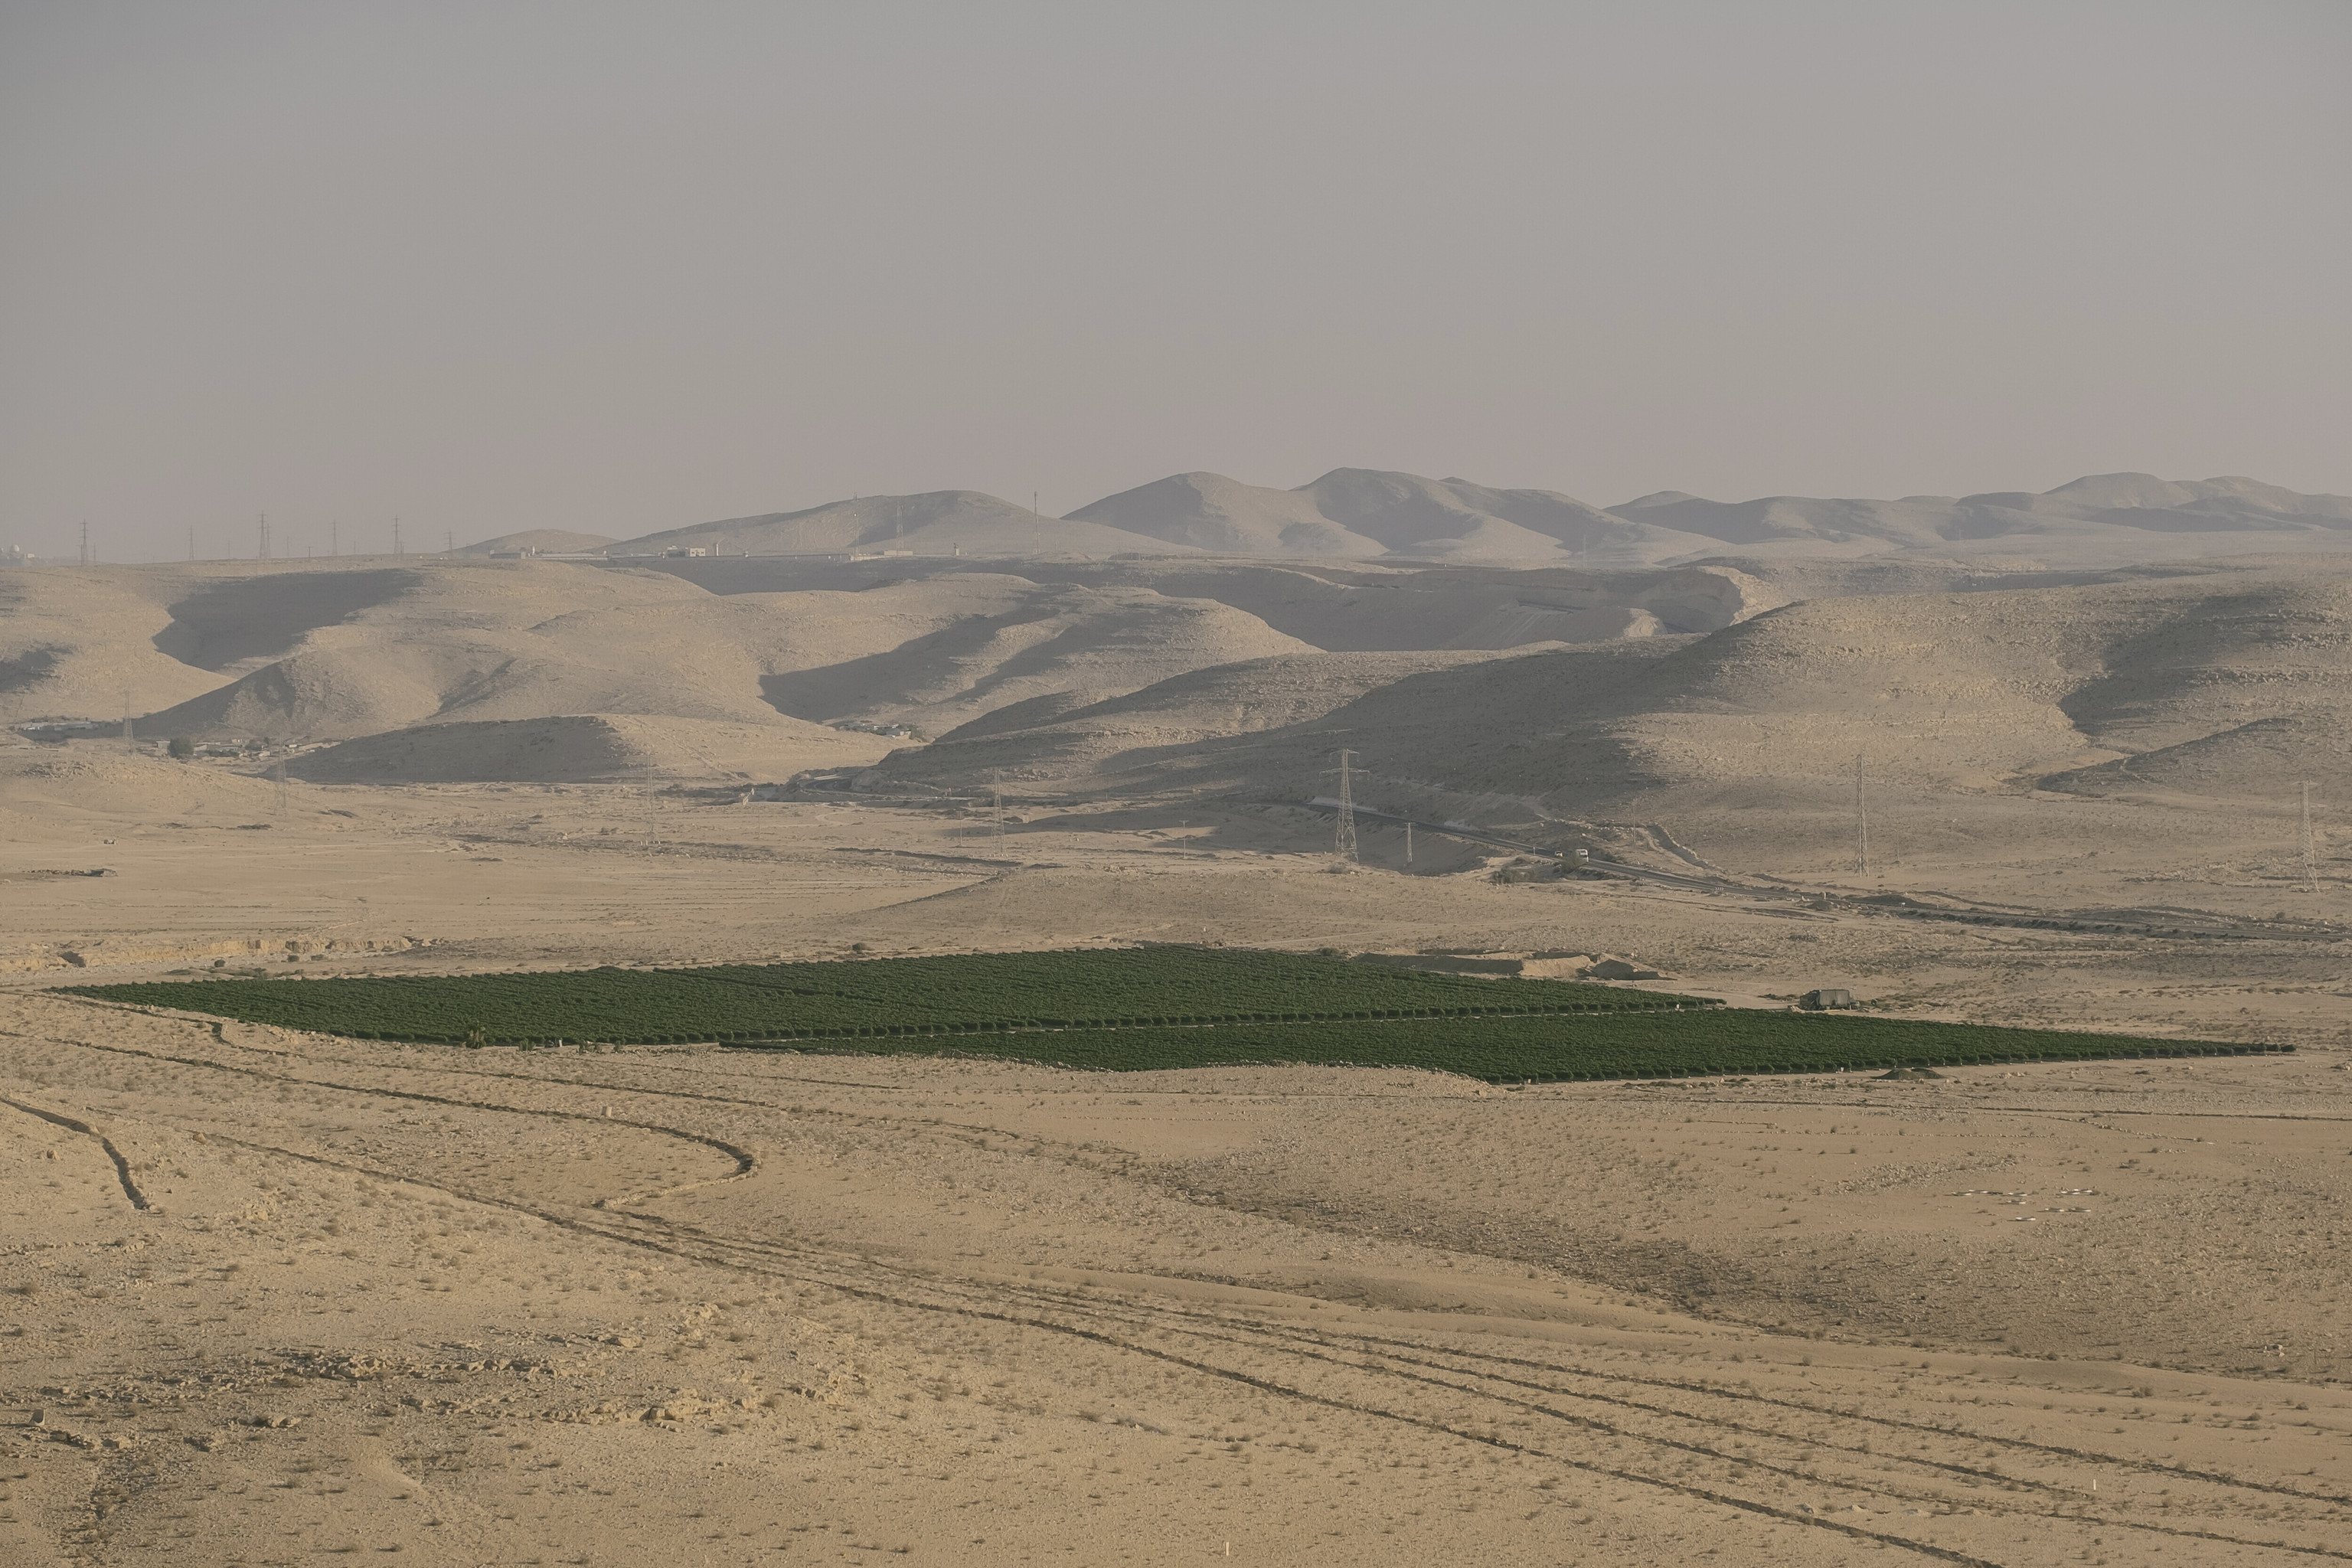 Imagen de un viñedo productivo en pleno desierto del Neguev (Israel), cultivado gracias a la I+D  desarrollada en el país hebreo.